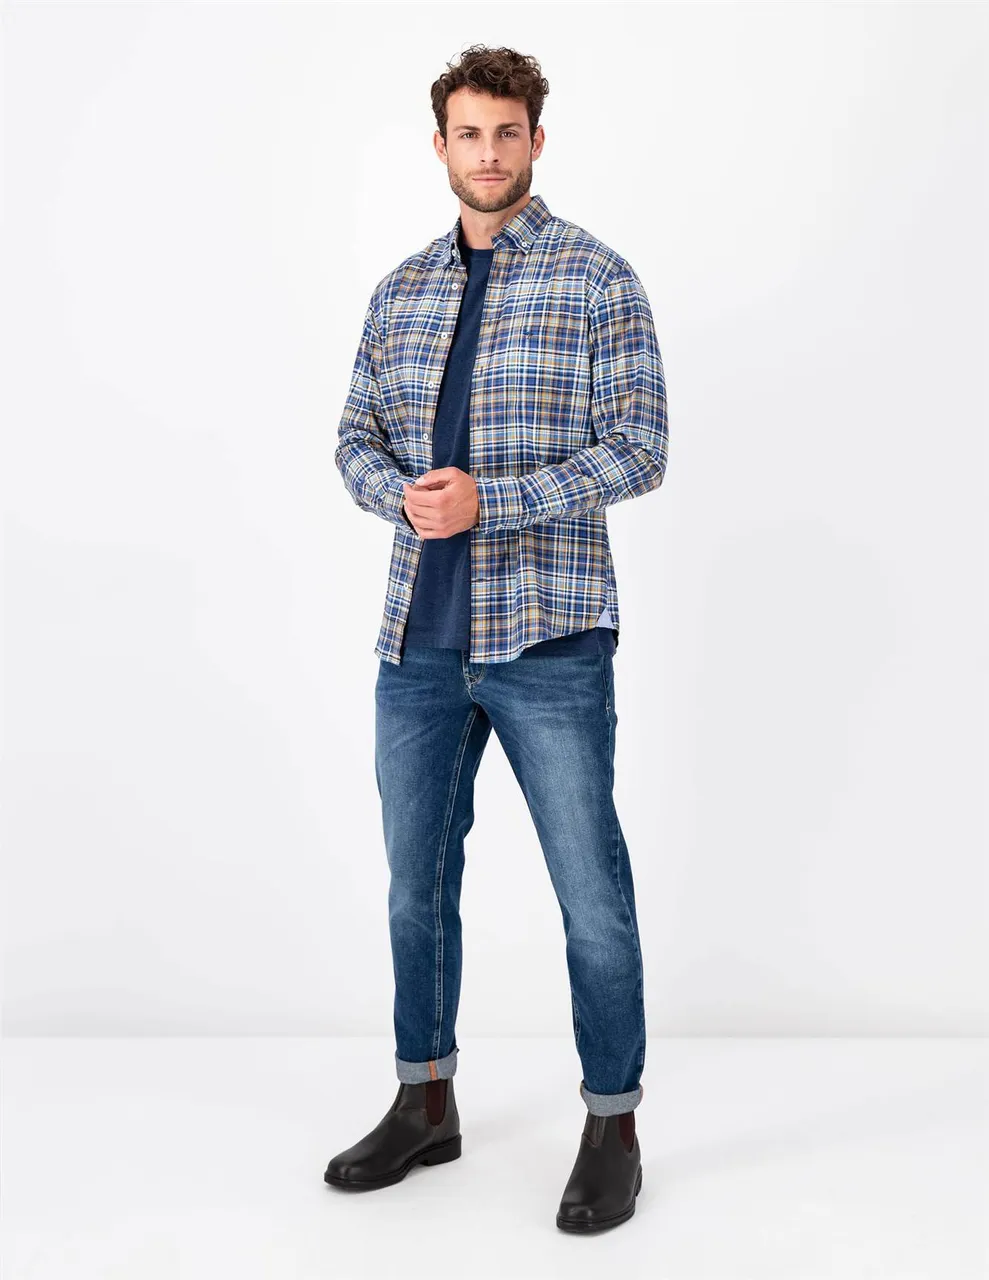 Langarm Freizeithemd Premium Flannel Checks, B.D., 1/1